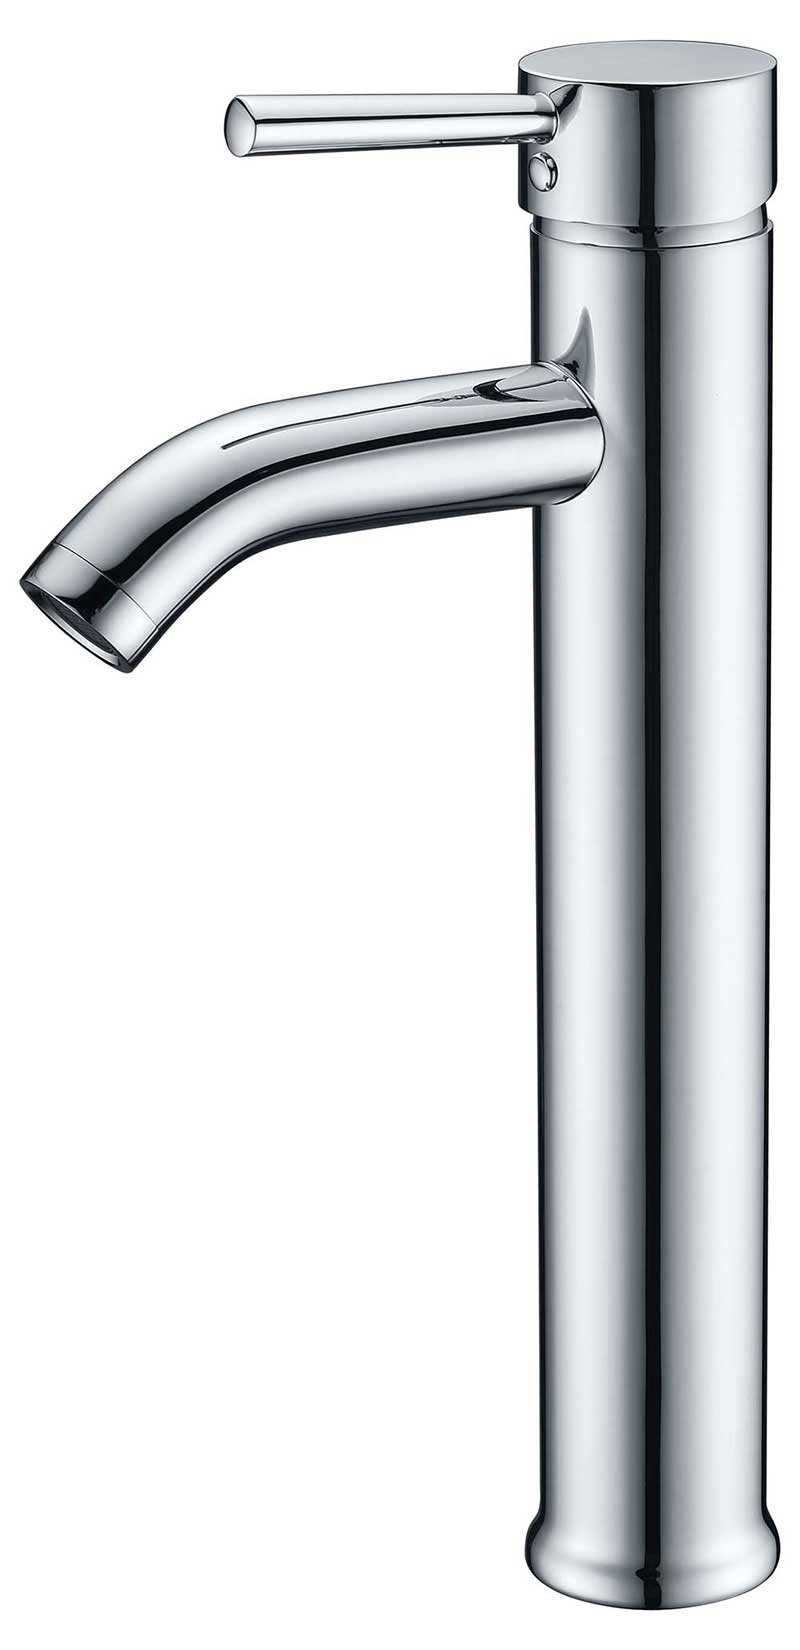 Anzzi Fann Single Handle Vessel Sink Faucet in Brushed Nickel